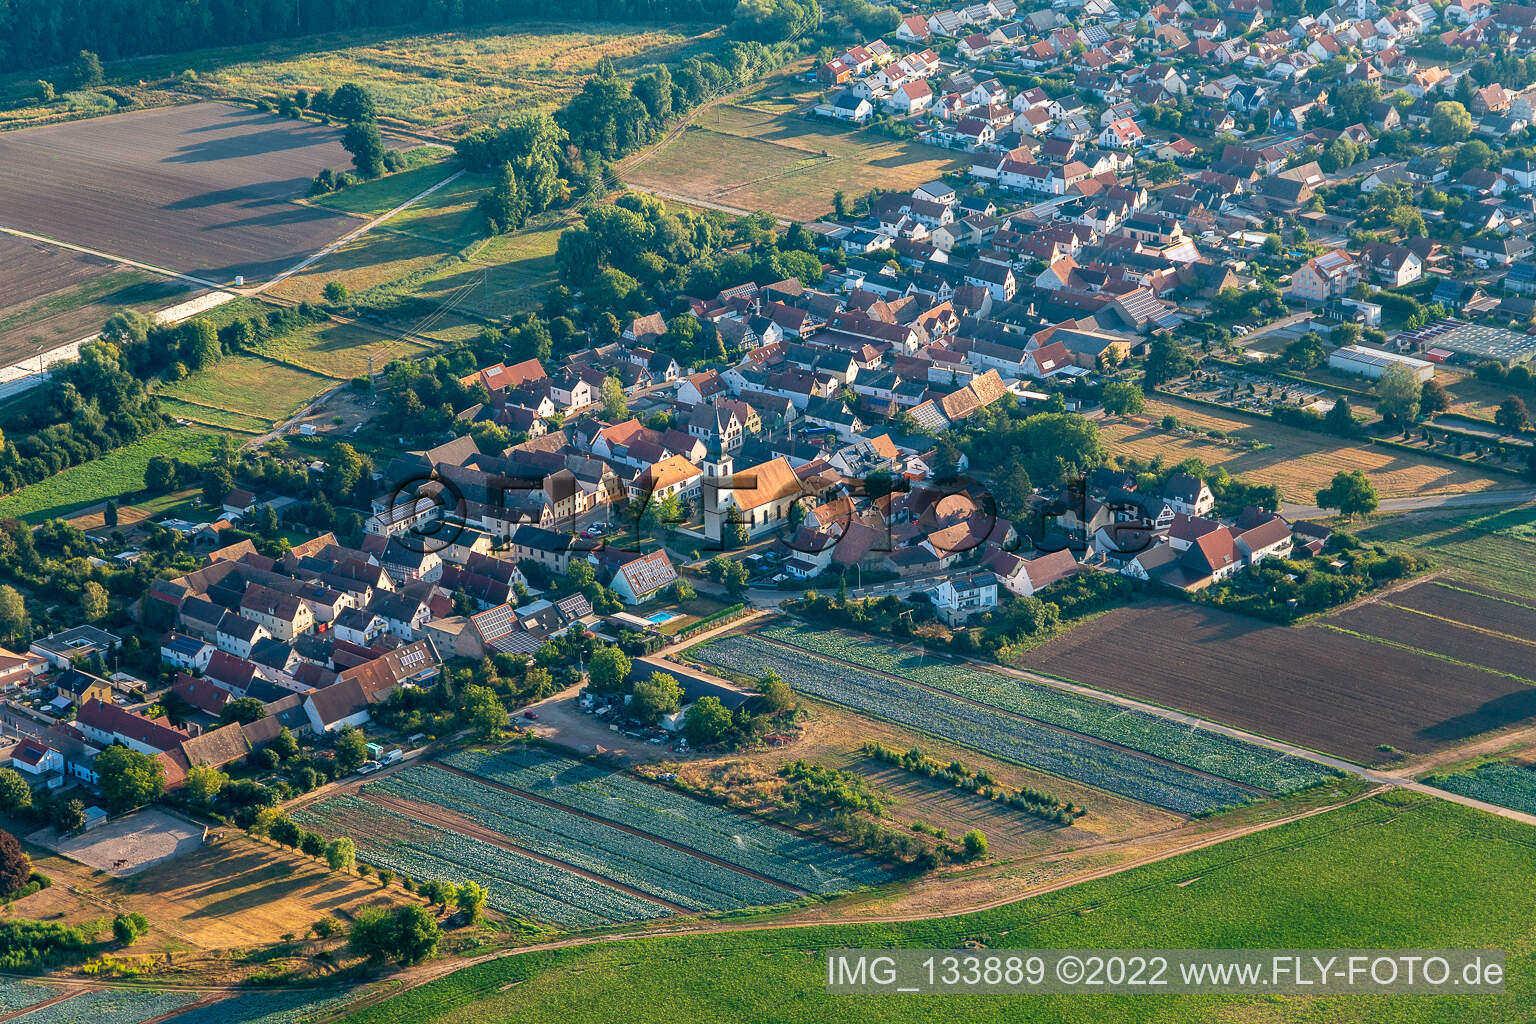 Freisbach dans le département Rhénanie-Palatinat, Allemagne vu d'un drone